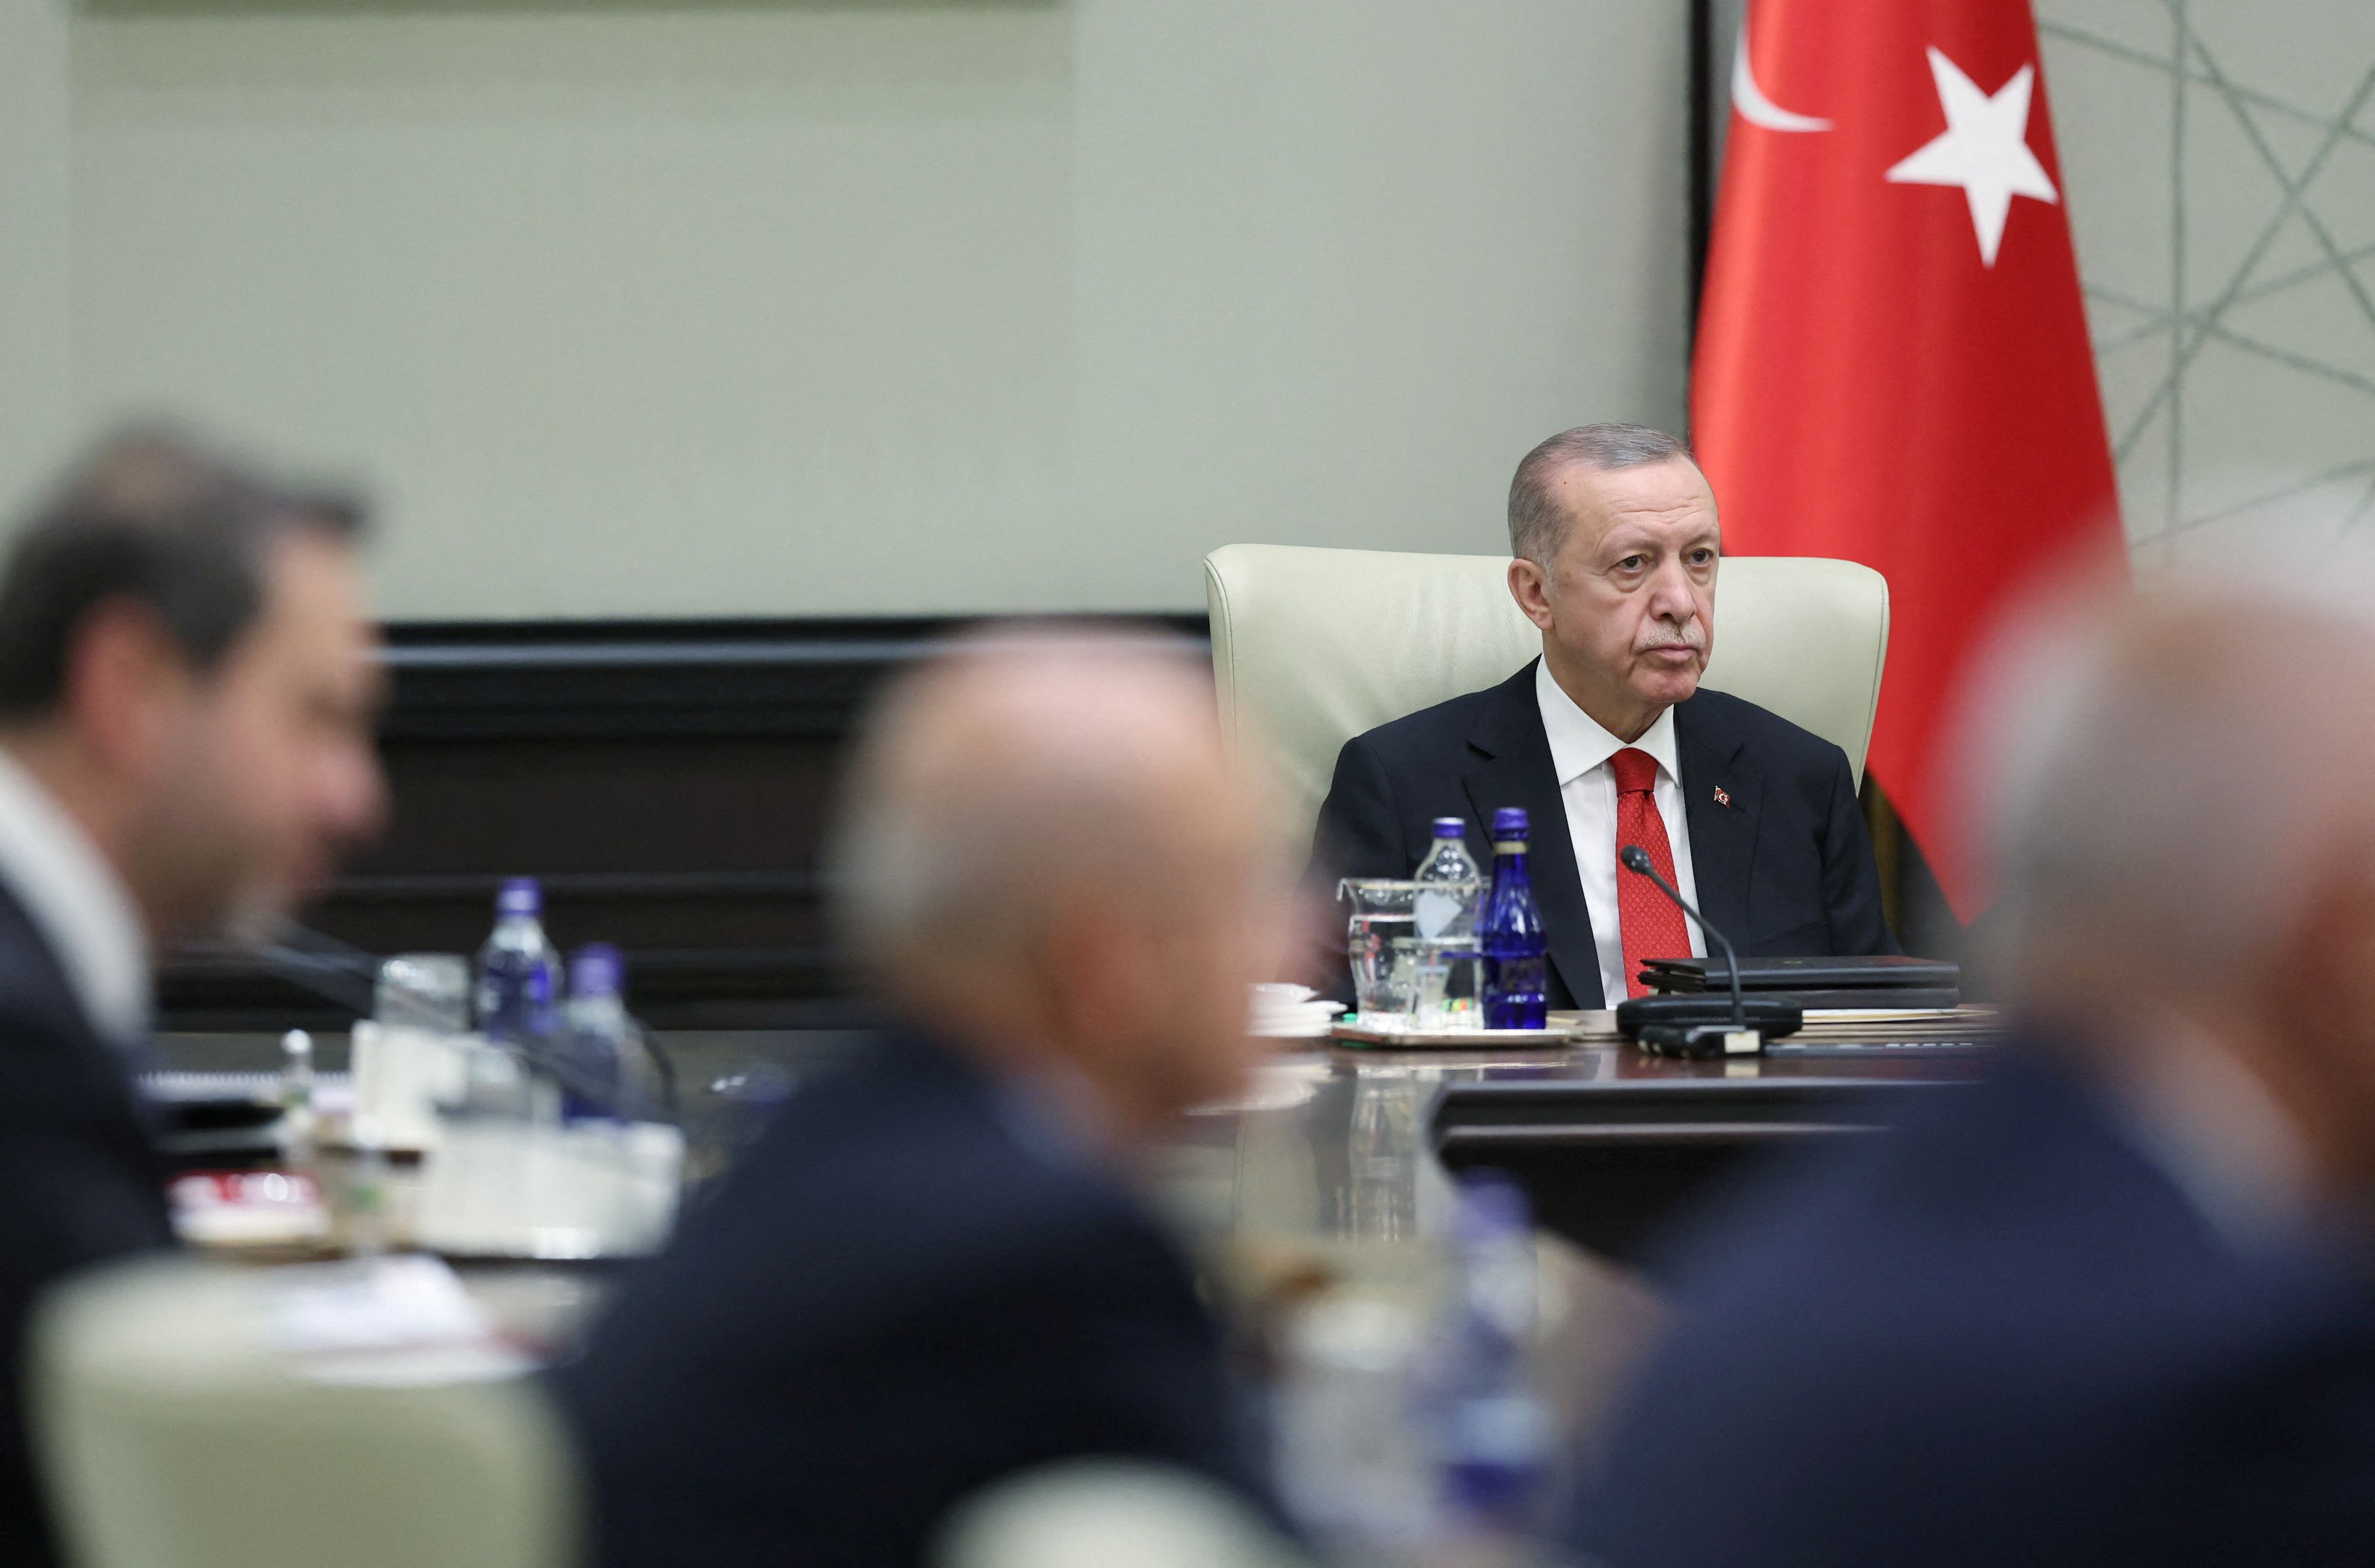 Αλλάζει ο Ερντογάν οικονομική και εξωτερική πολιτική; Τούρκος ακαδημαϊκός μιλά στο ΒΗΜΑ